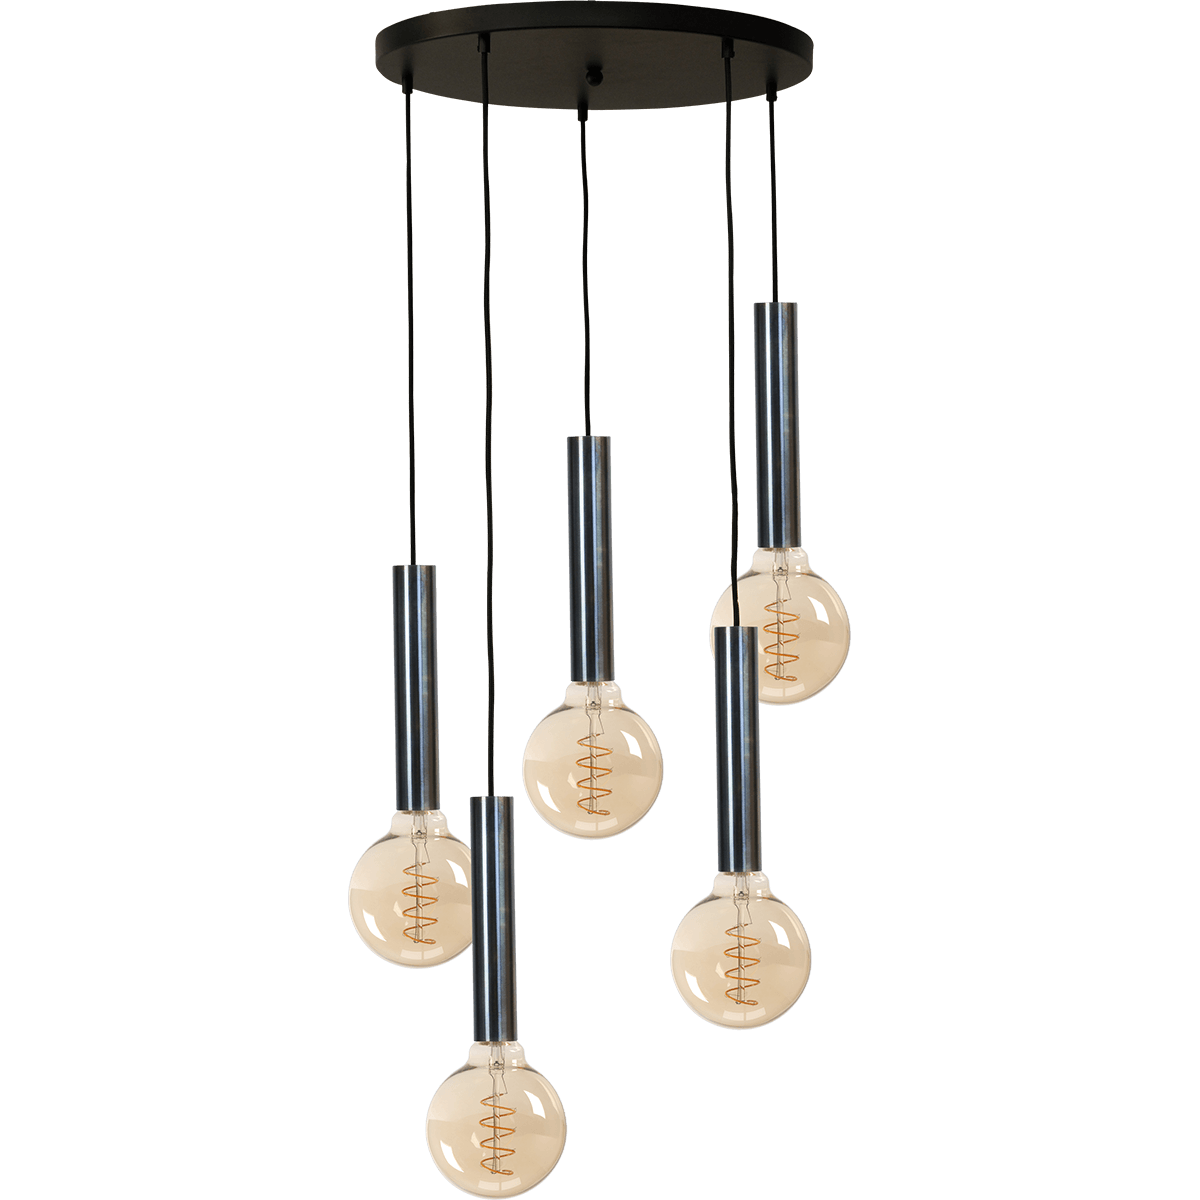 Hanglamp Tomasso 5-lichts dappled oil - basis zwart Ø50cm - zwarte stoffen kabel 350cm - MASTERLIGHT